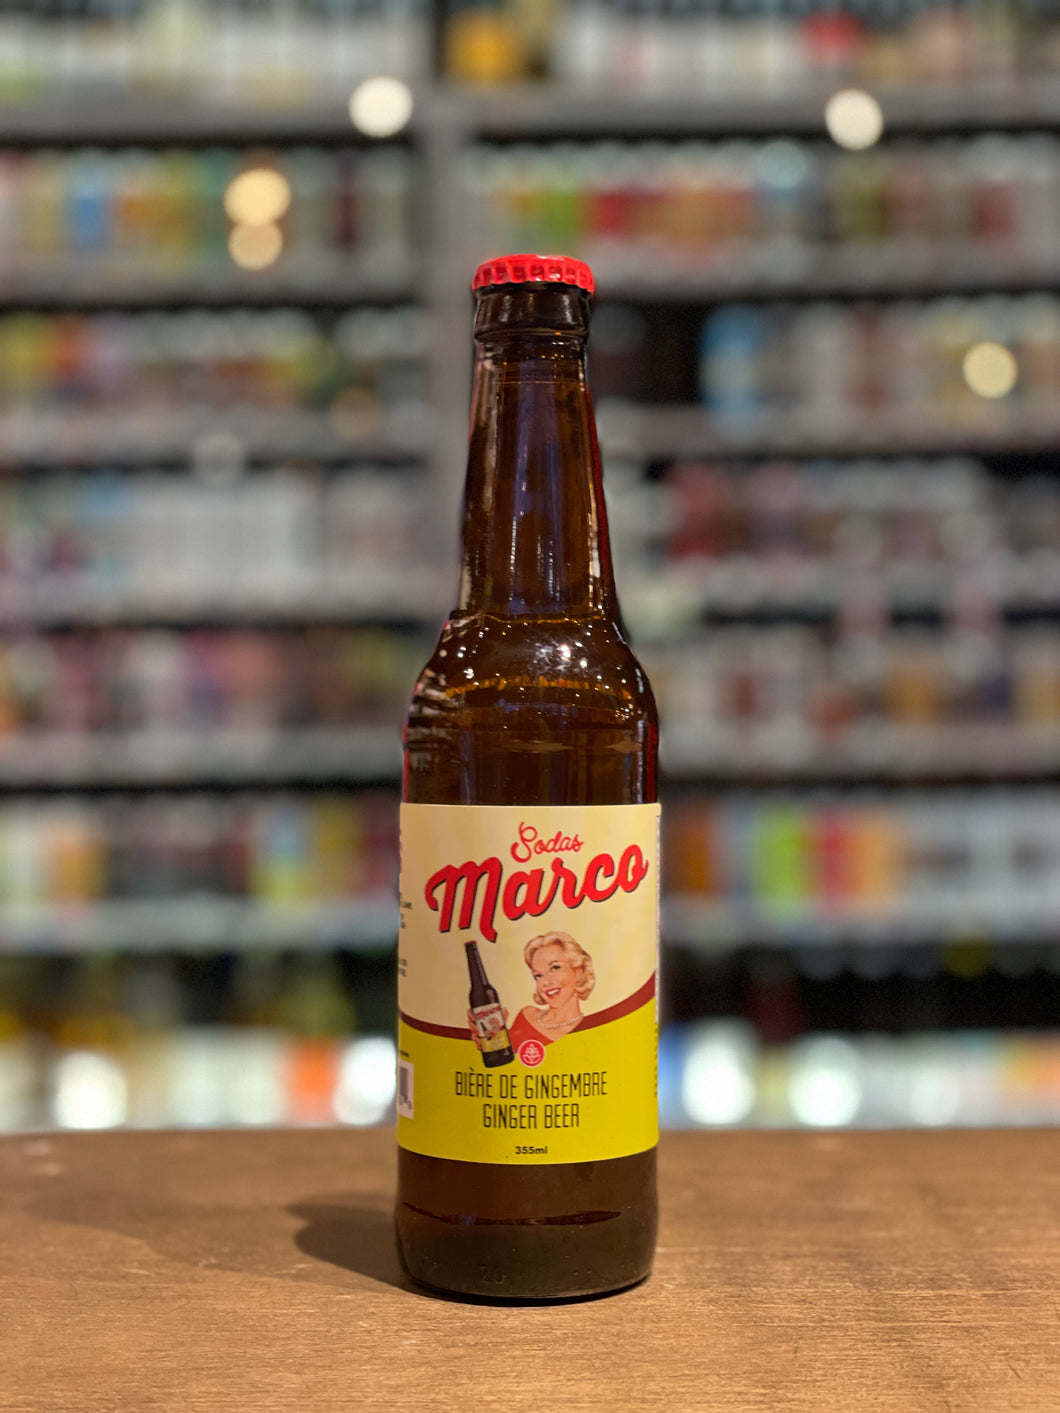 Sodas Marco - Bière de gingembre